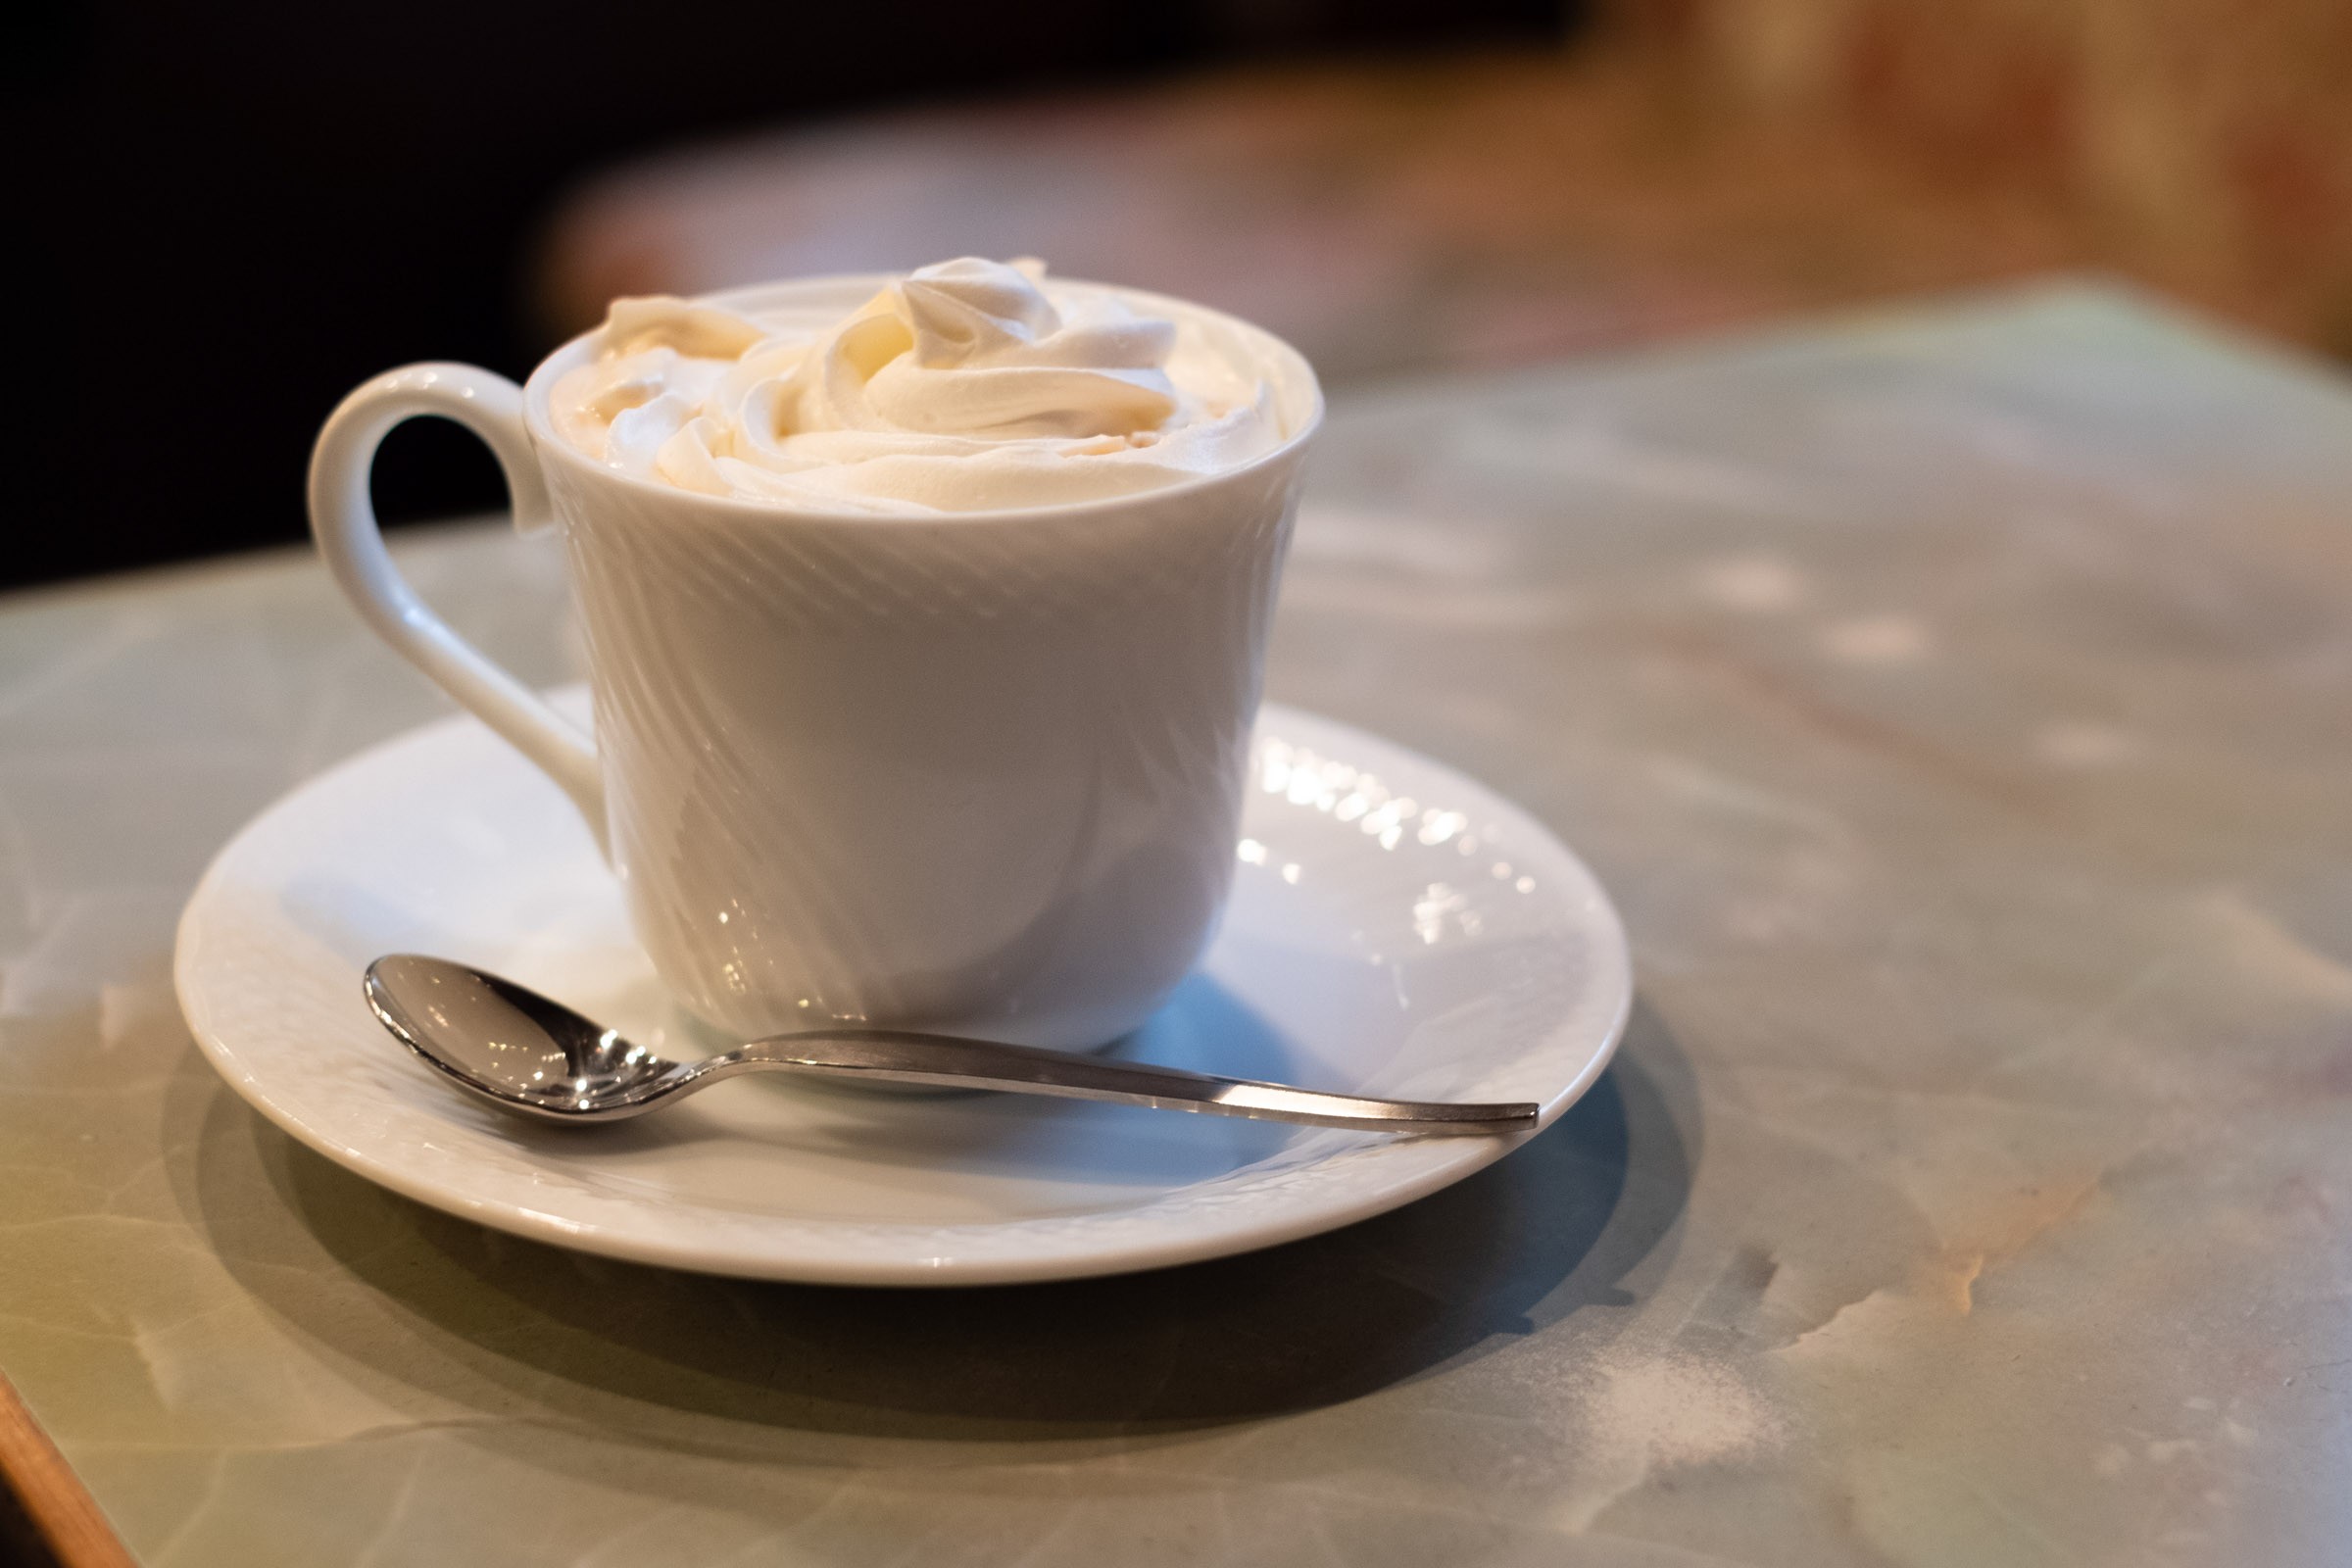 ウインナーコーヒー 昭和世代には懐かしい想い出の珈琲 フリー写真有 イメージガレージ